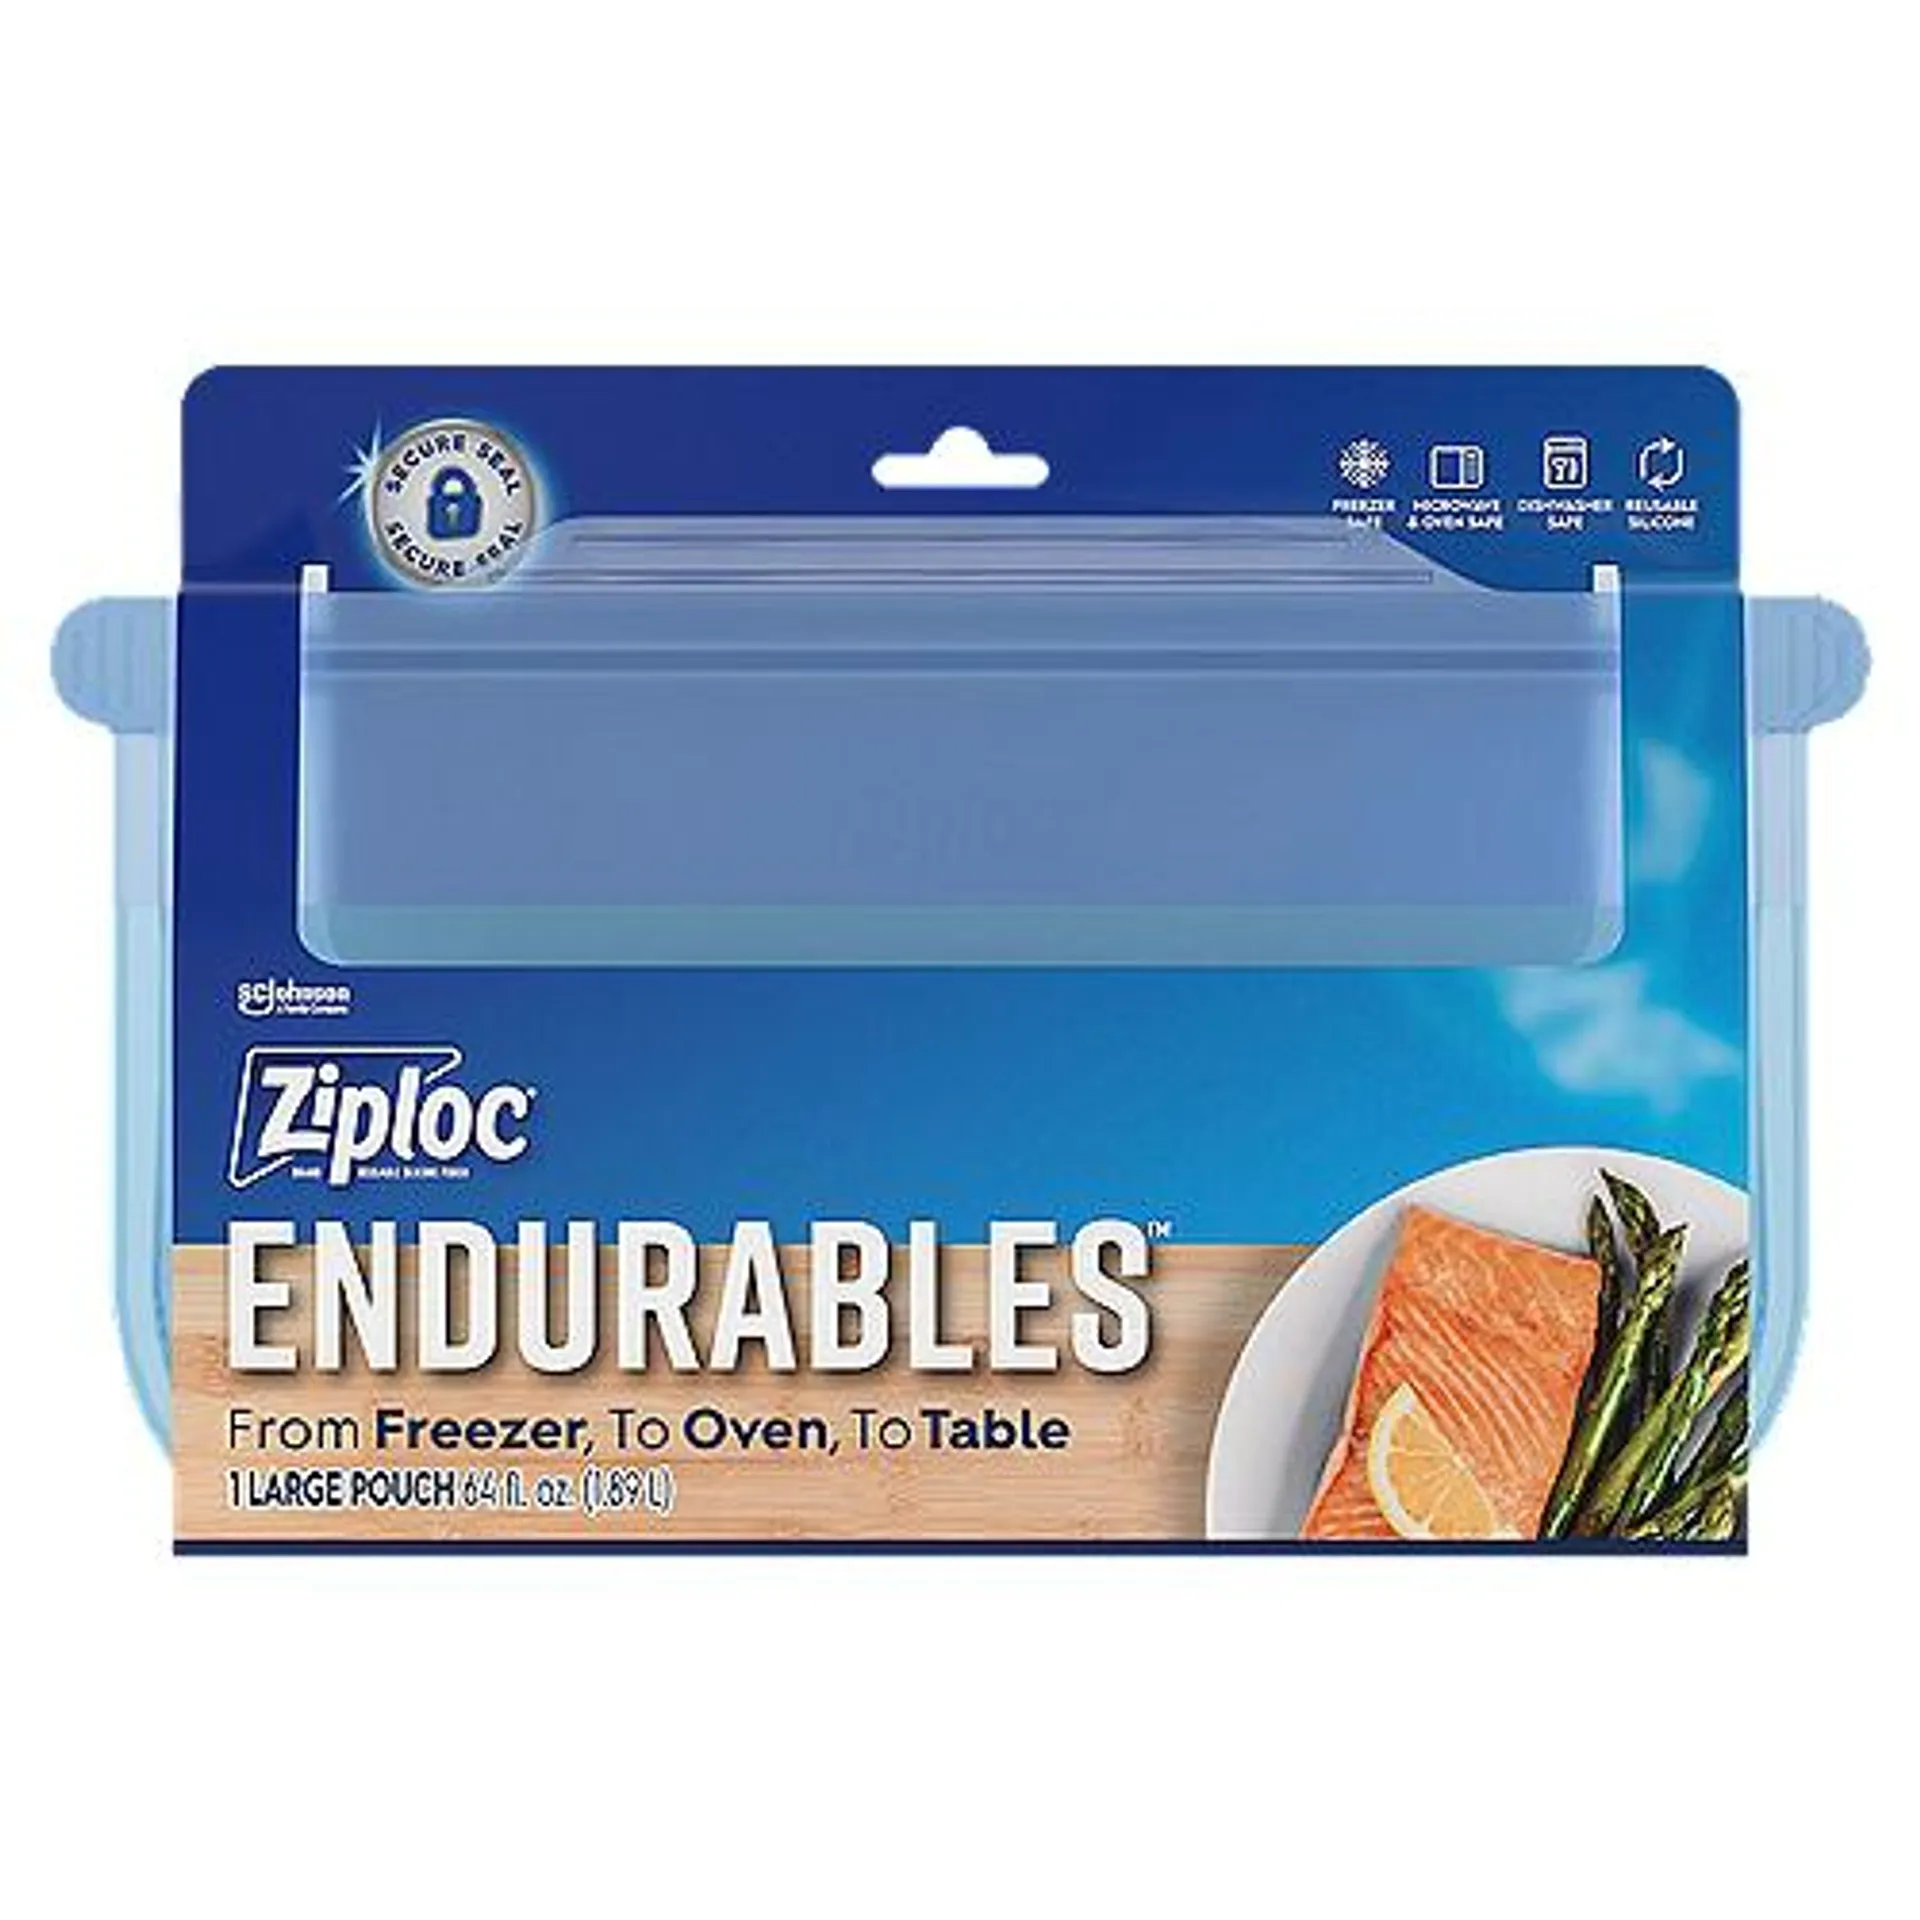 Ziploc® Endurables™ Large Pouch, Half Gallon, 8 cups, 64 fl oz, Reusable Silicone